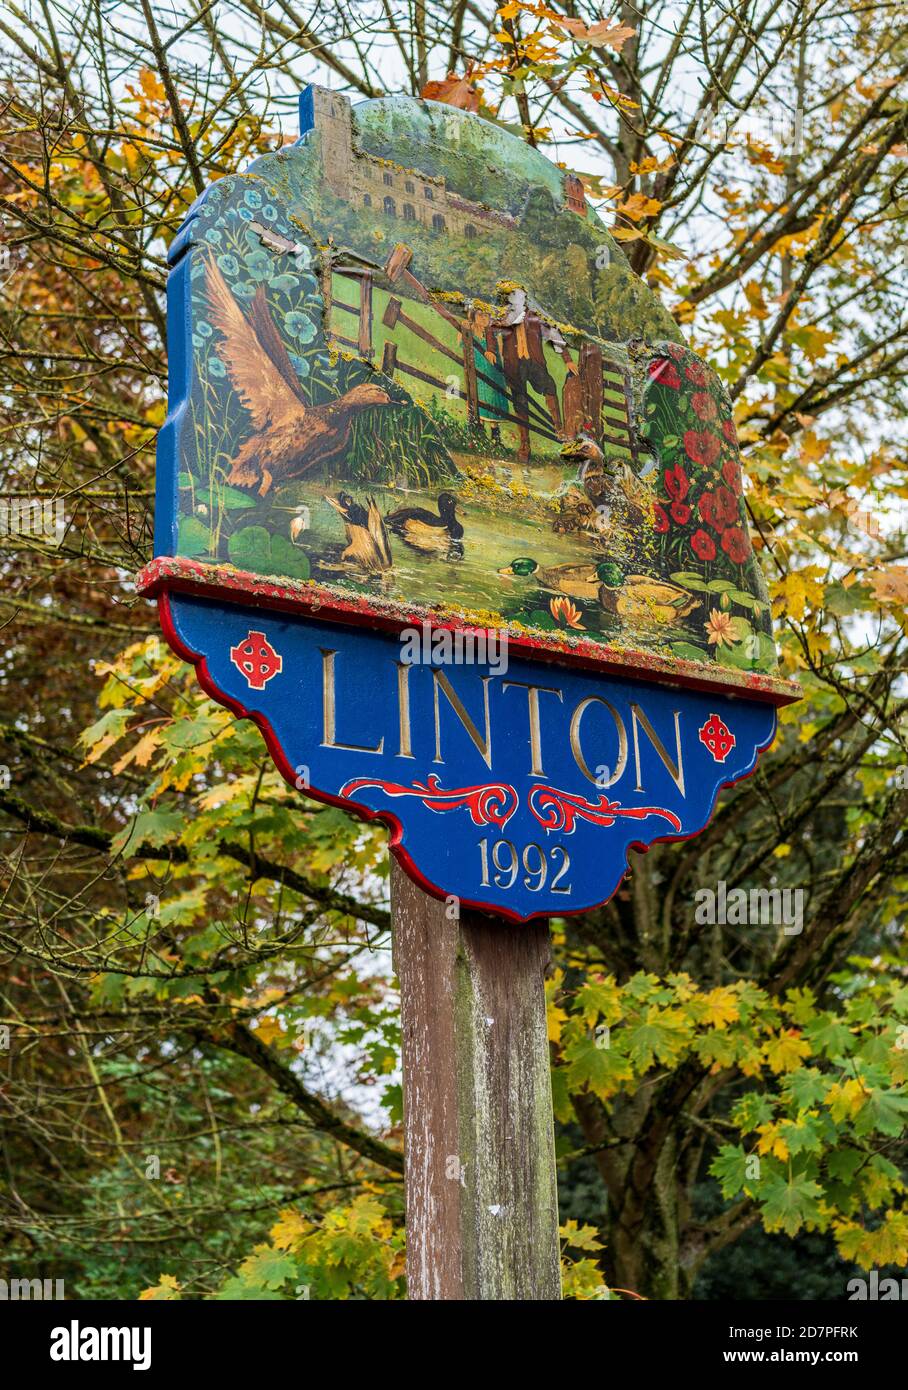 Linton Village Sign - Linton Cambridgeshire. Gegründet zur Zeit des Domesday-Buches, Bevölkerung um 4500 (2011). Schild mit Klapper-Stil. Stockfoto